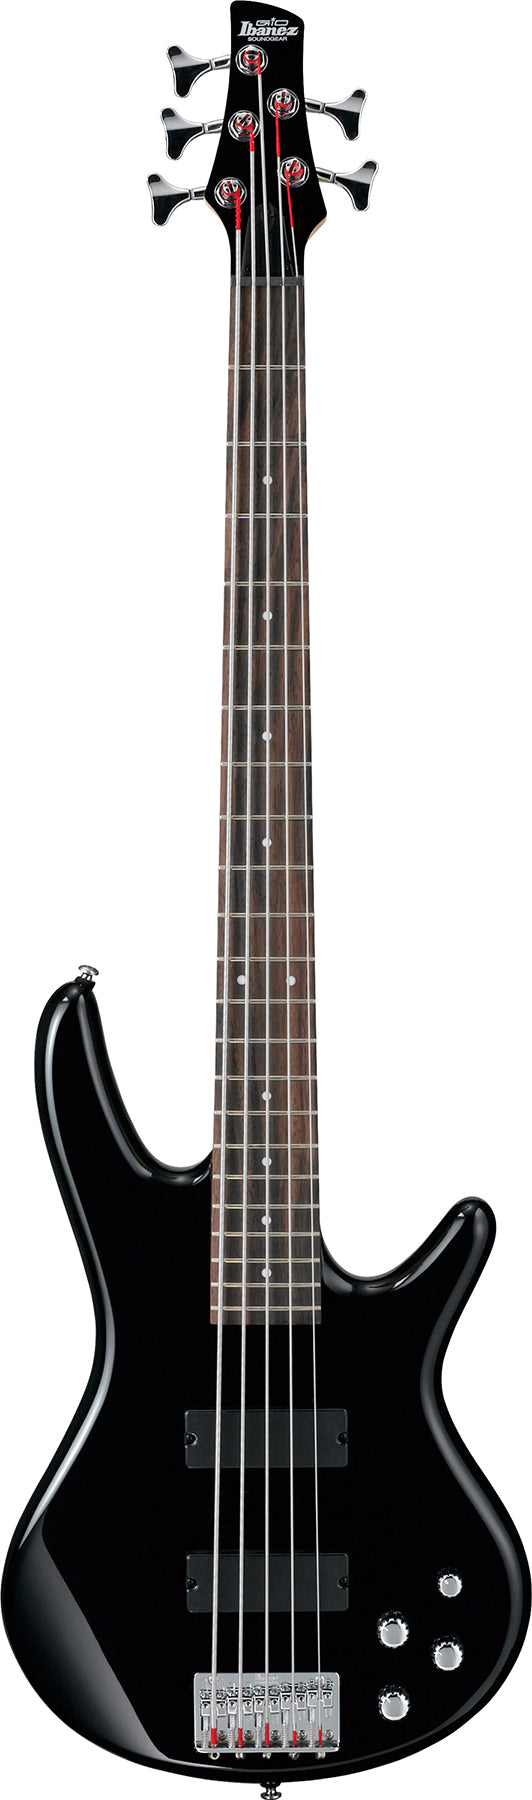 Ibanez GSR205BK 5 cordes - Basse électrique avec Active Bass Boost - Noir